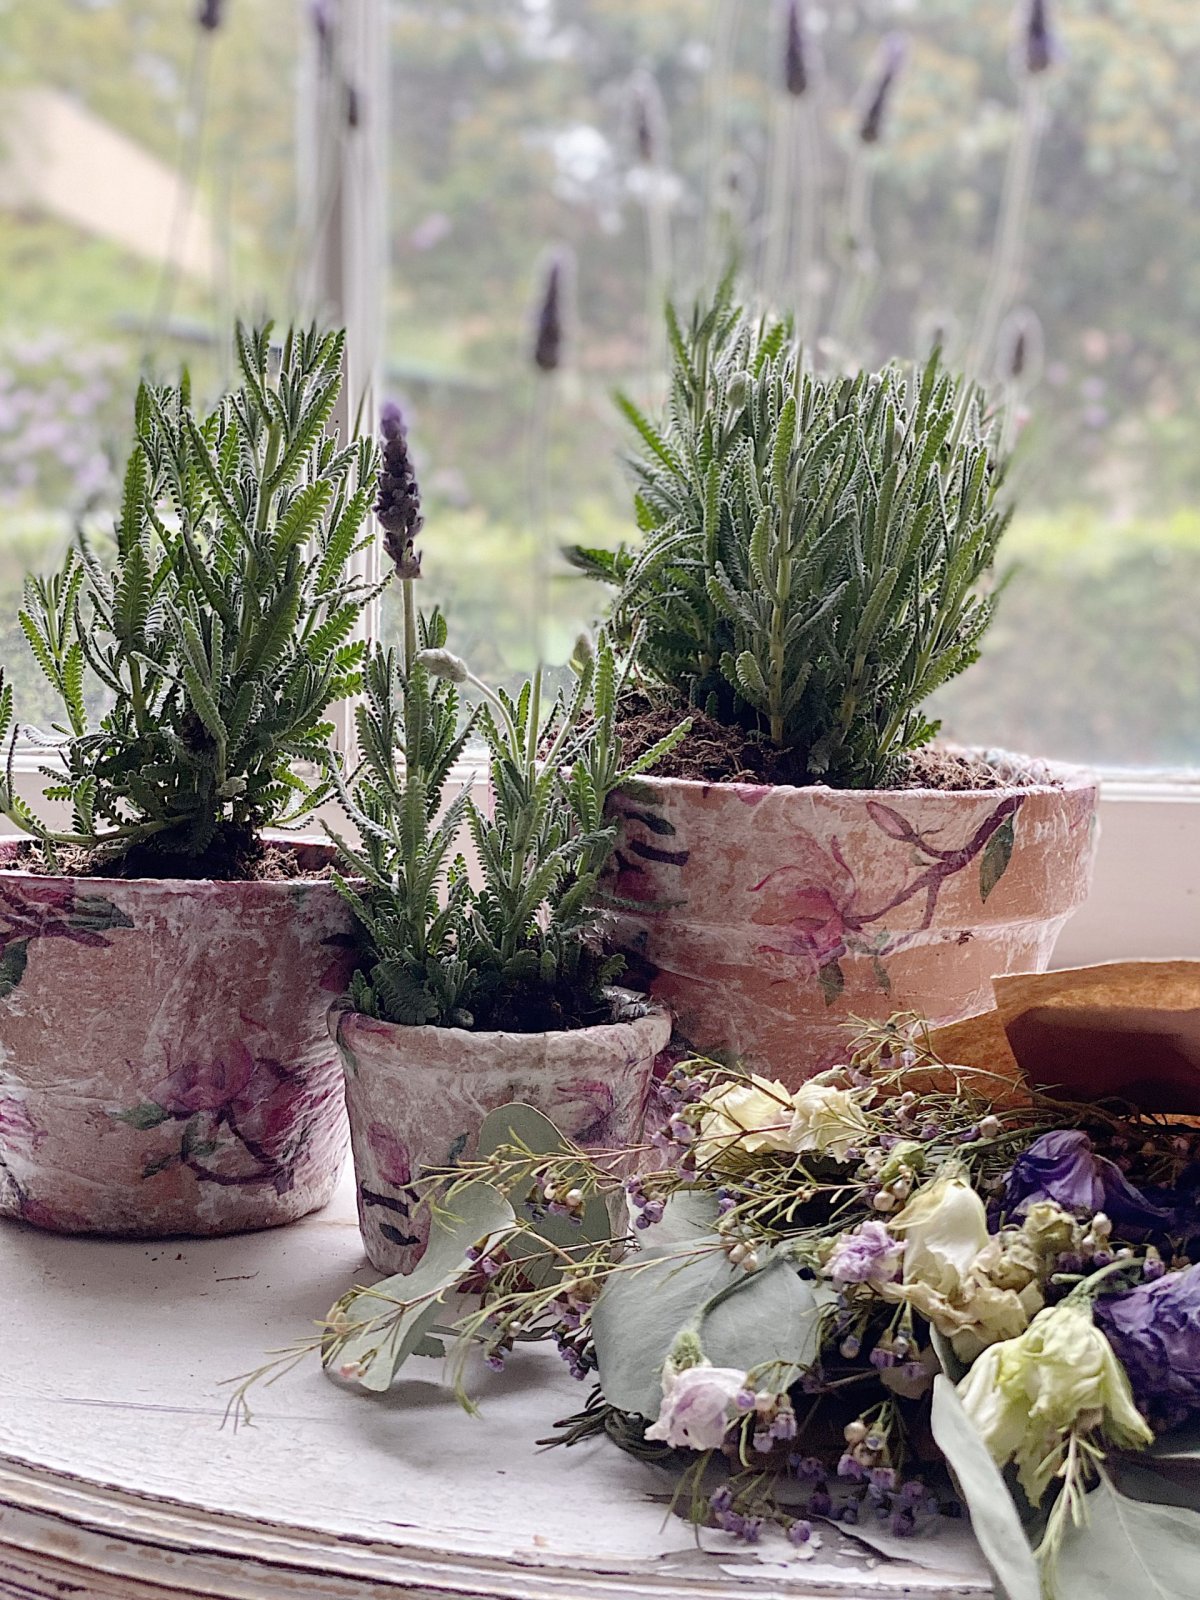 Decoupage Terra Cotta Pots with Lavender Plants